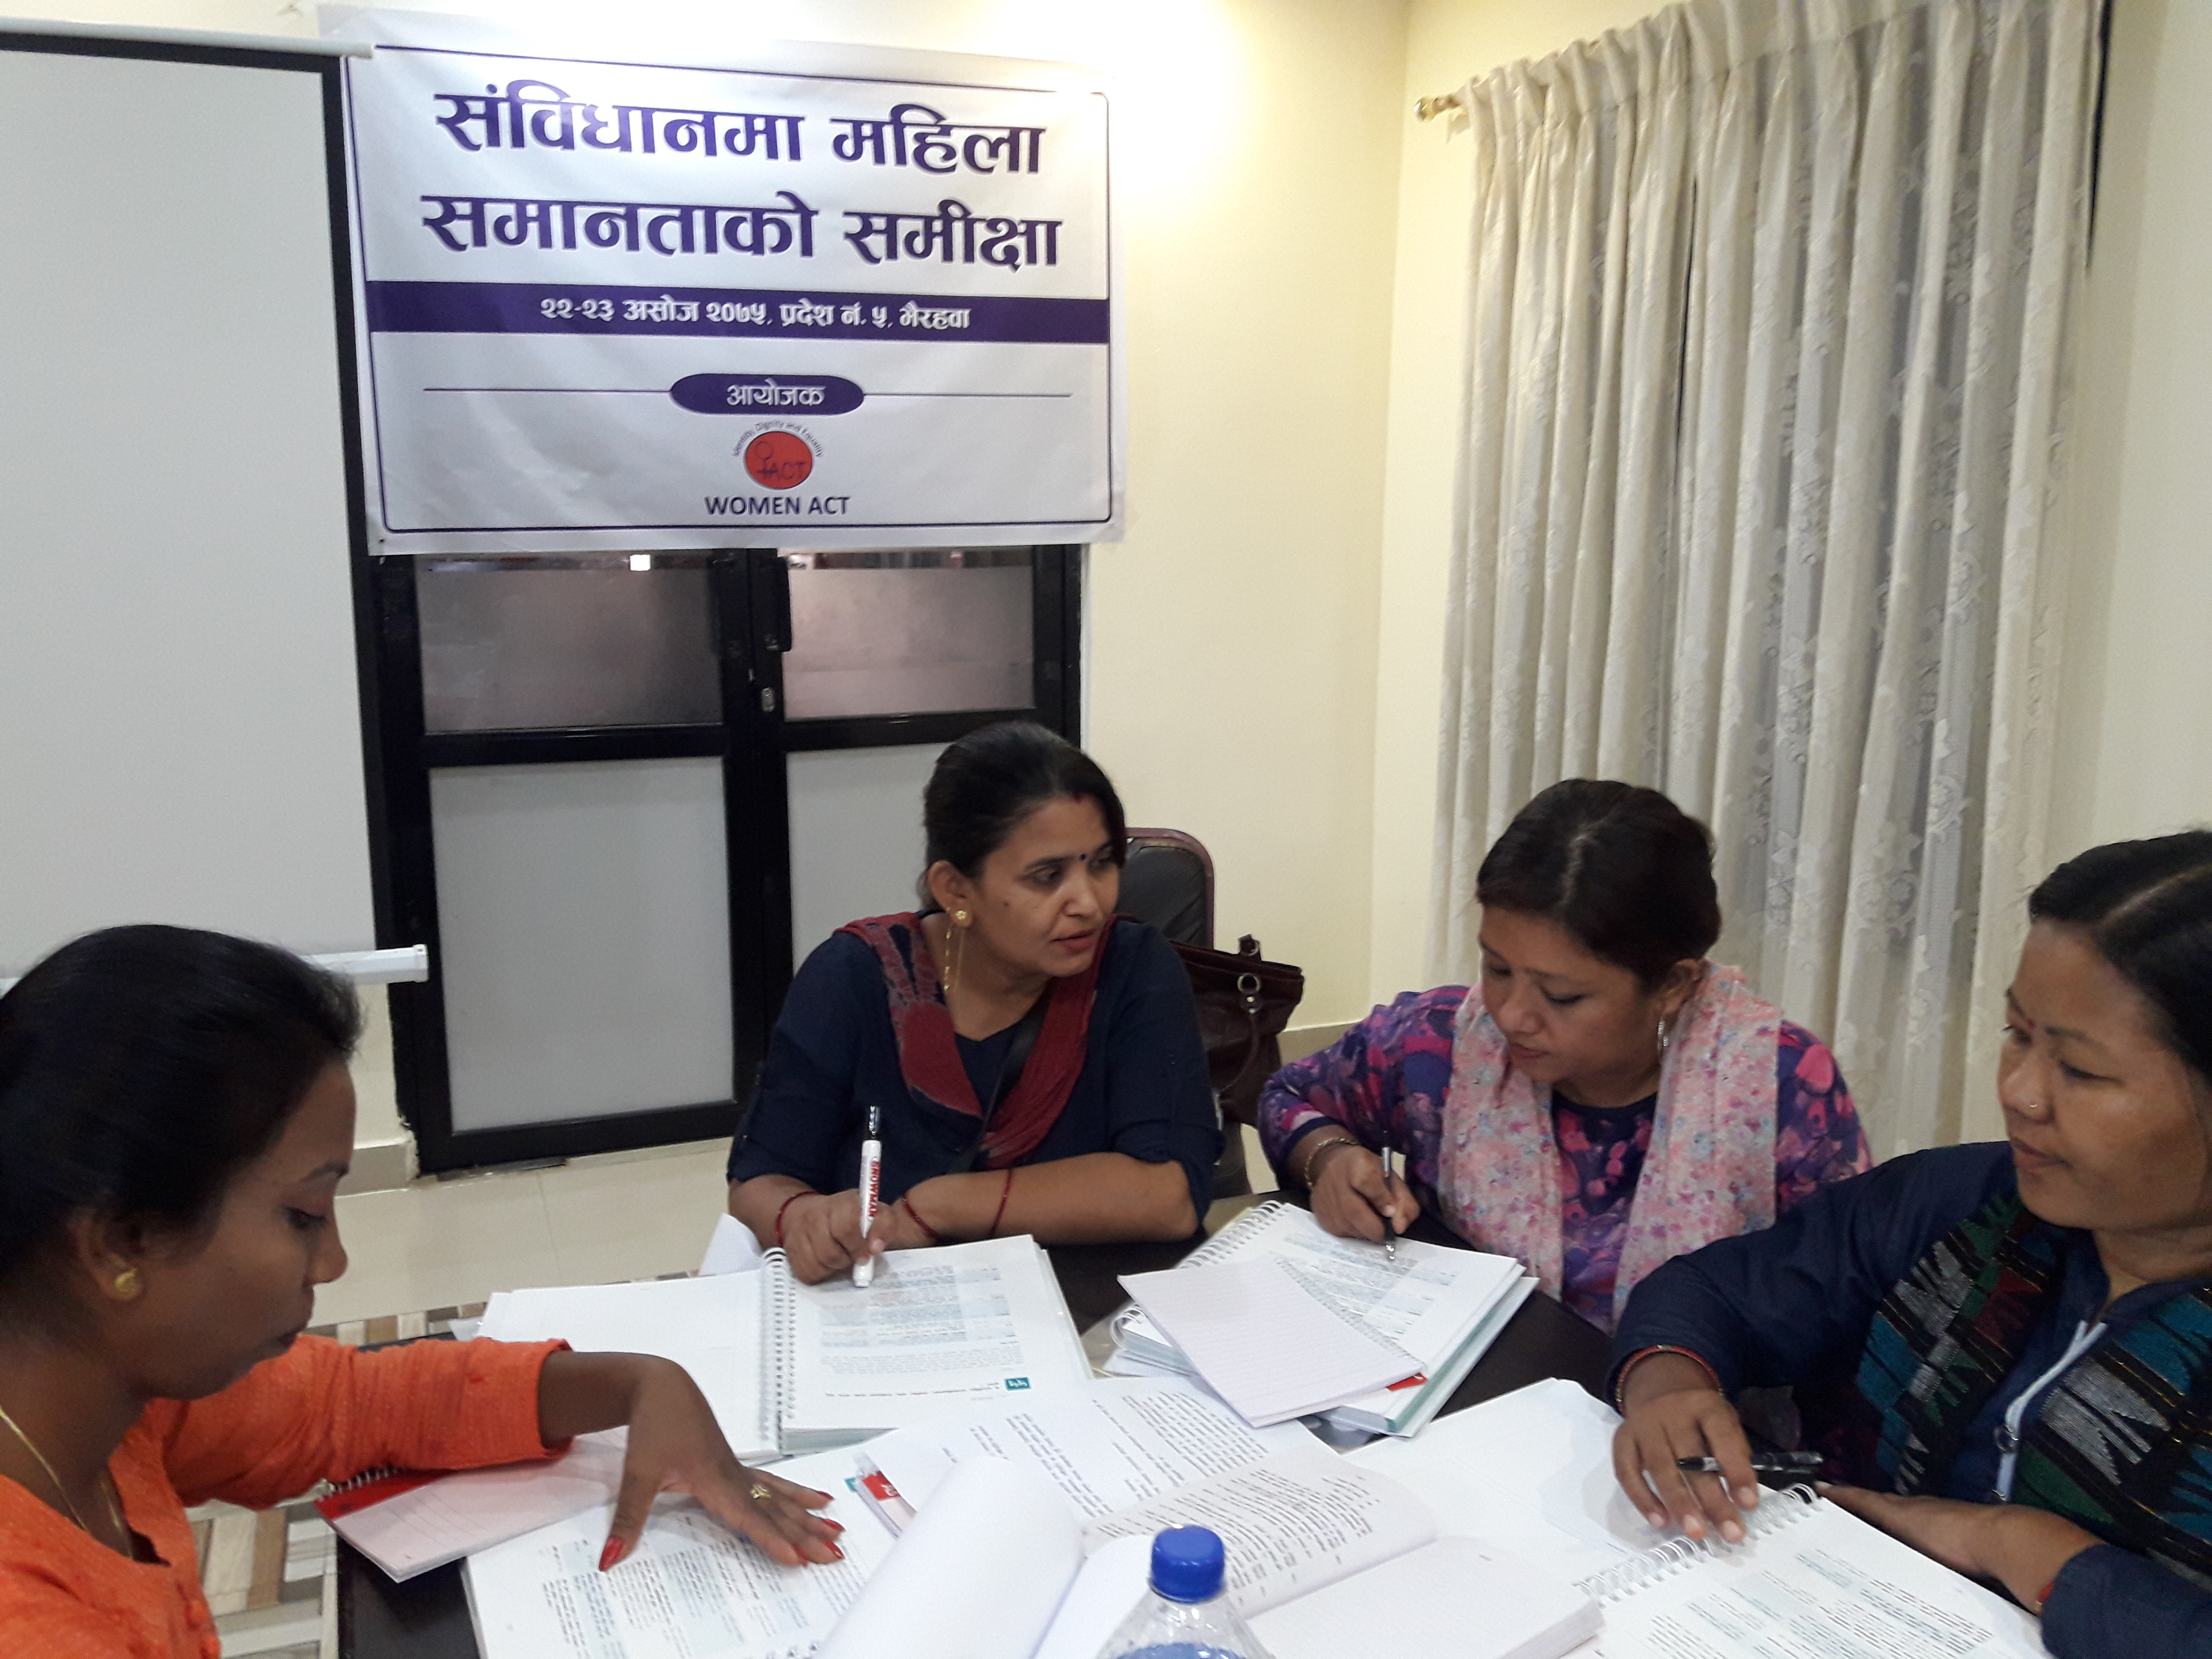 Participants discussing the constitution of Nepal. Image: International IDEA/Rita Rai